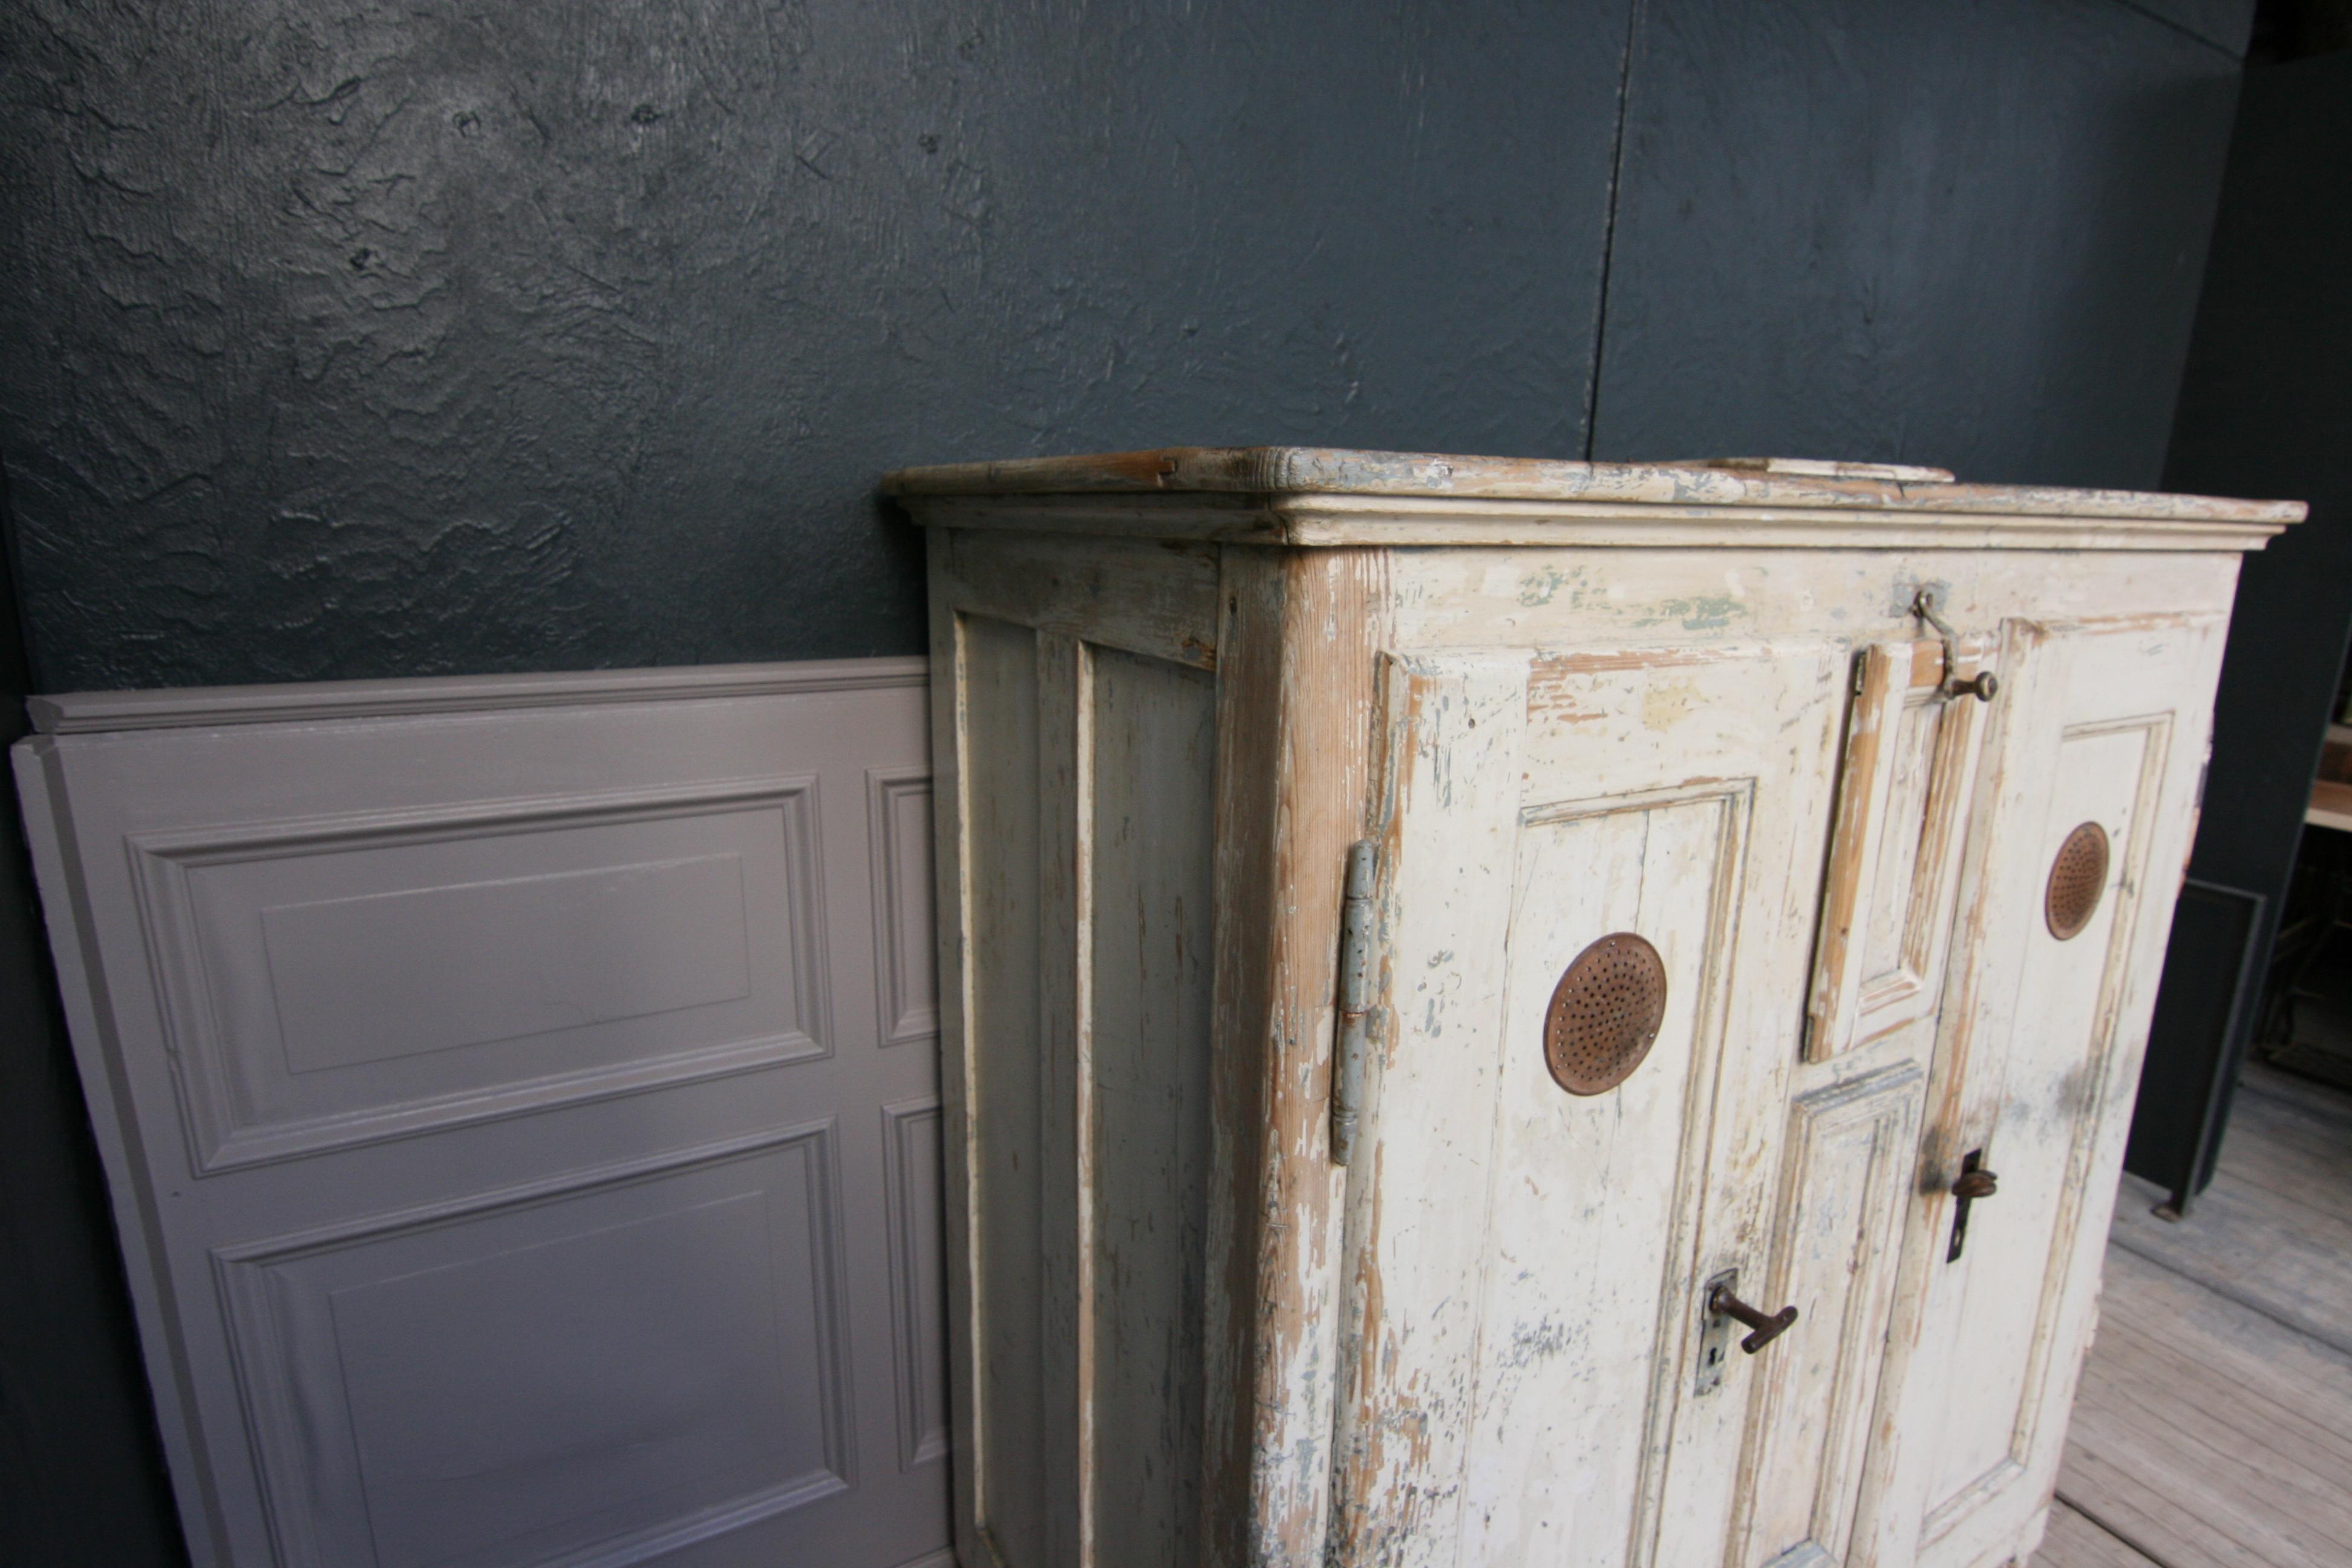 19th Century Refrigerator or Ice Box Cabinet in Original Cream Paint 5